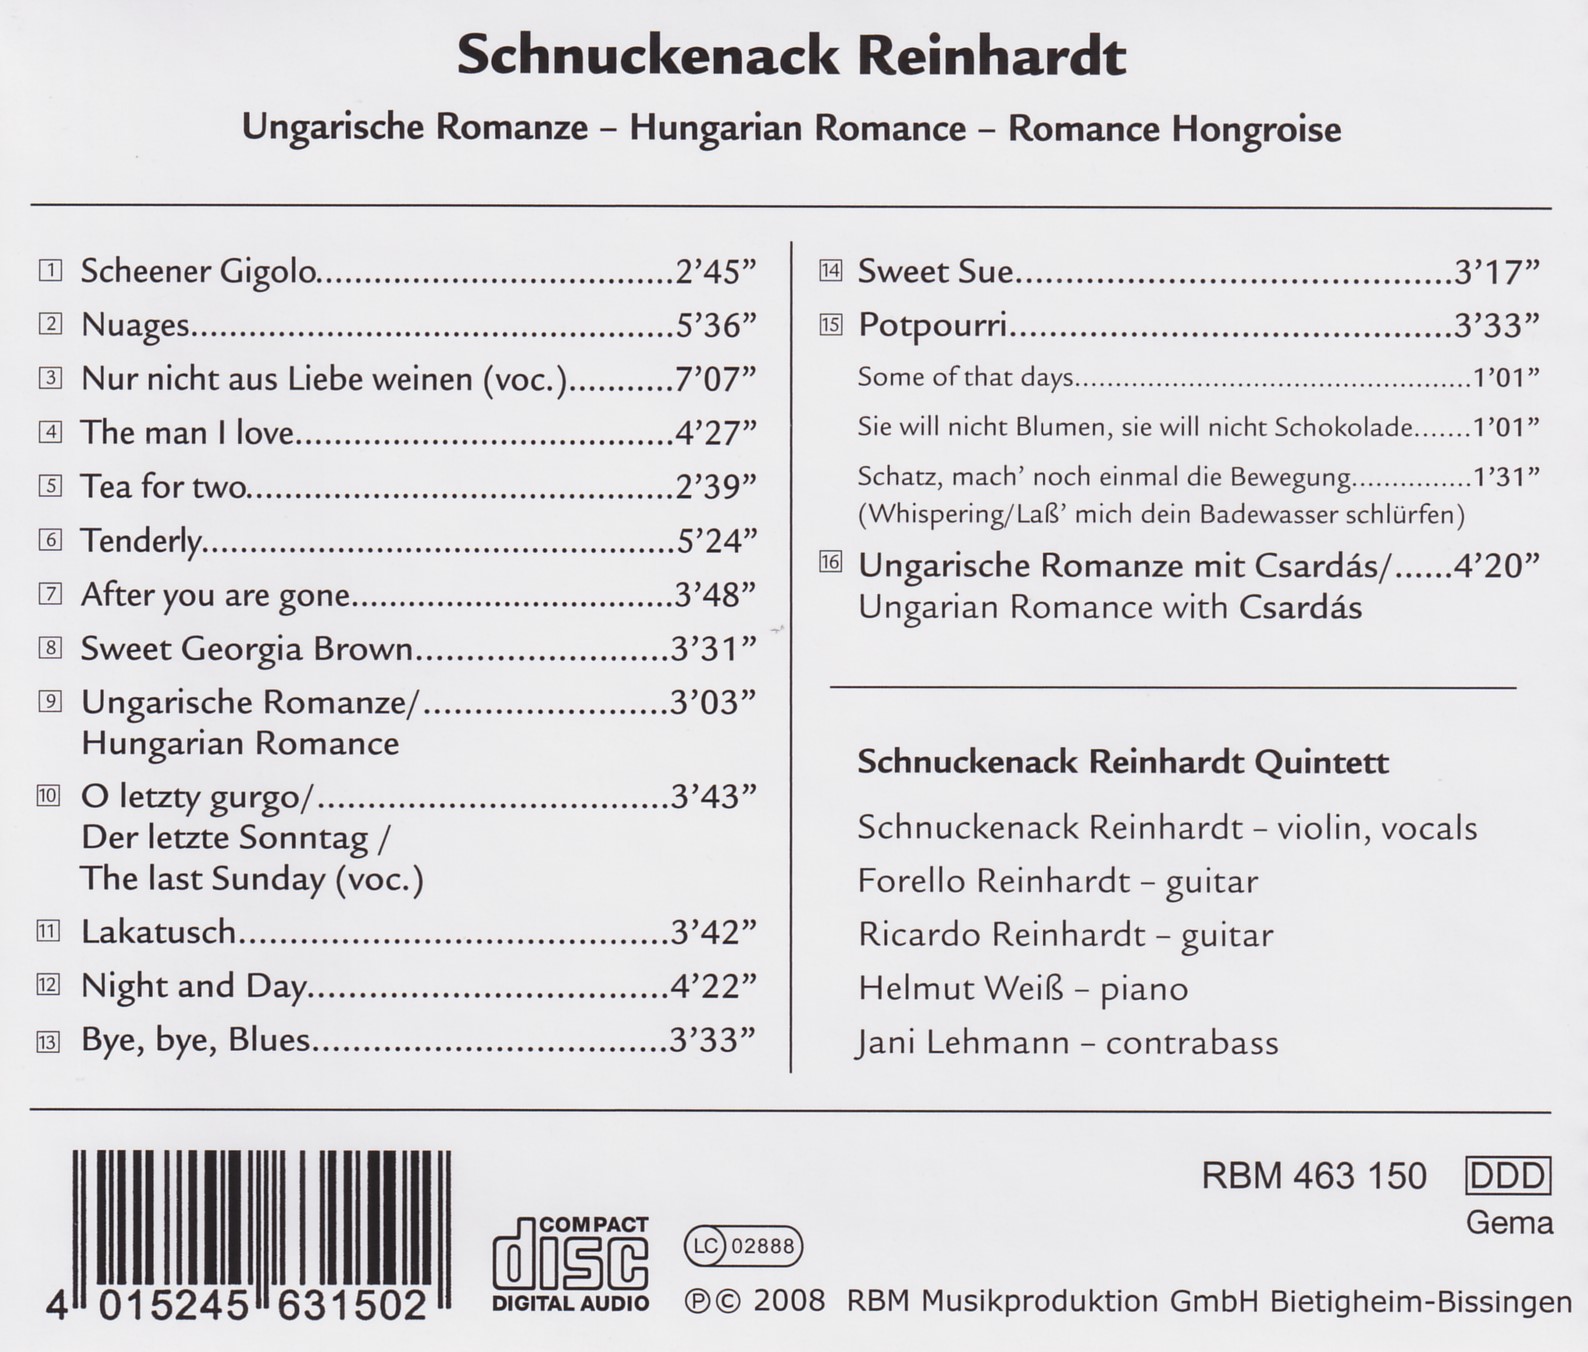 Schnuckenack Reinhardt Quintett - Ungarische Romanze 